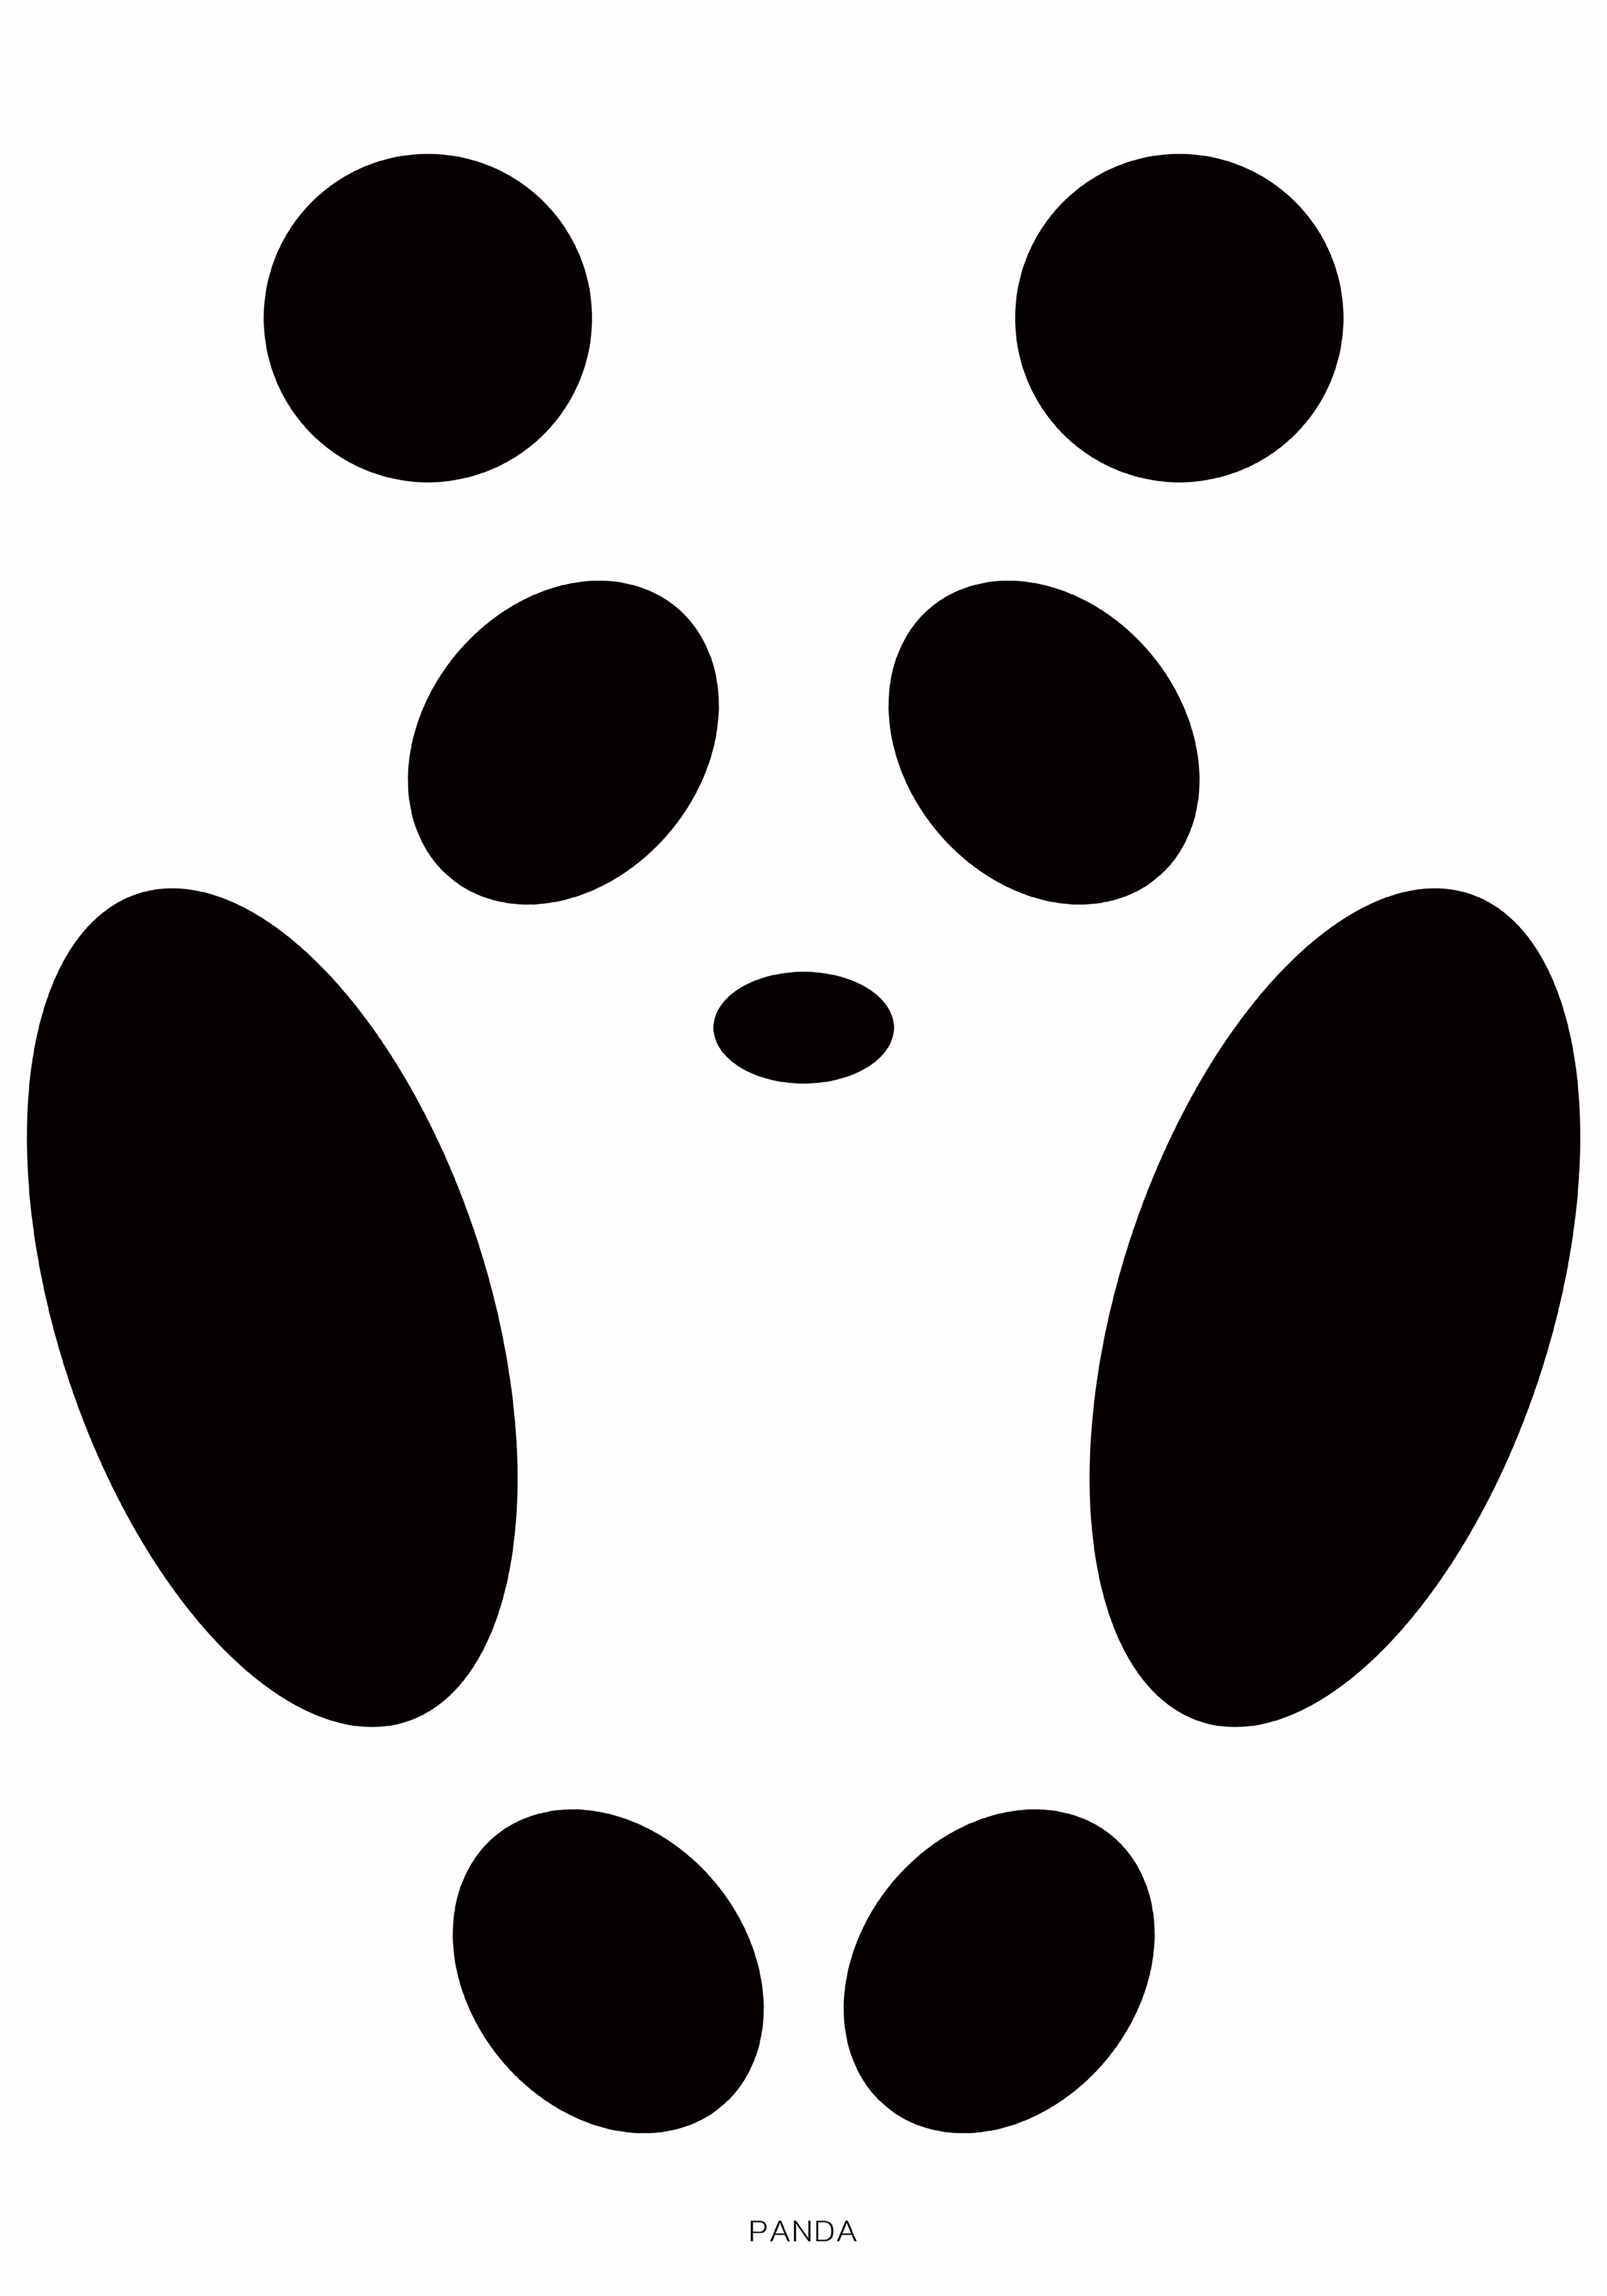 《panda》-D铜奖-Yanyun Li-china.jpeg